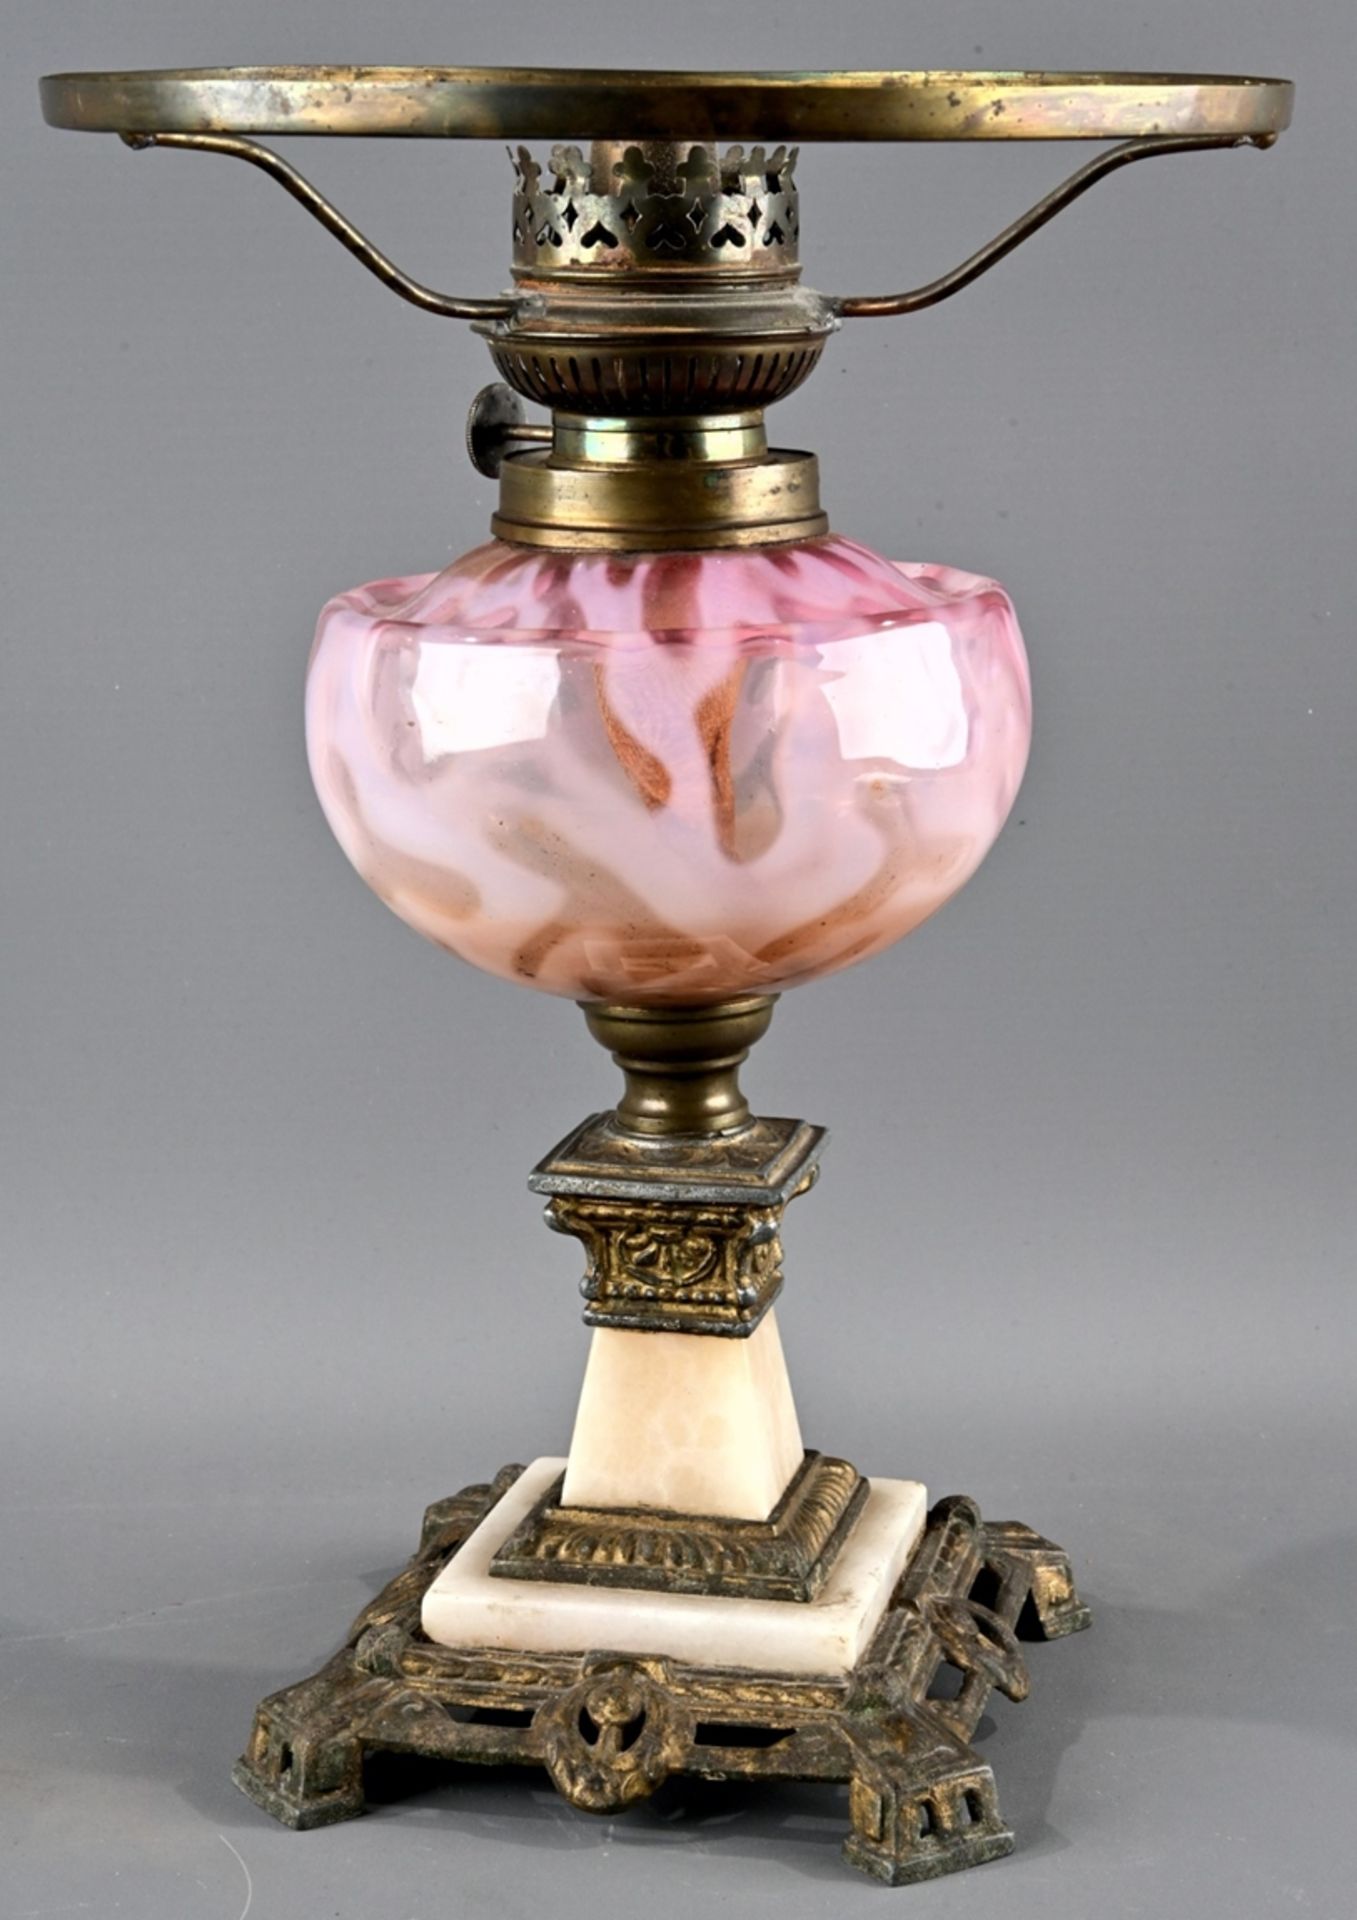 Antike Petroleumlampe, Neo-Empire, um 1900/20, guter, unperfekter Erhalt, verschiedene Materialien. - Image 5 of 7